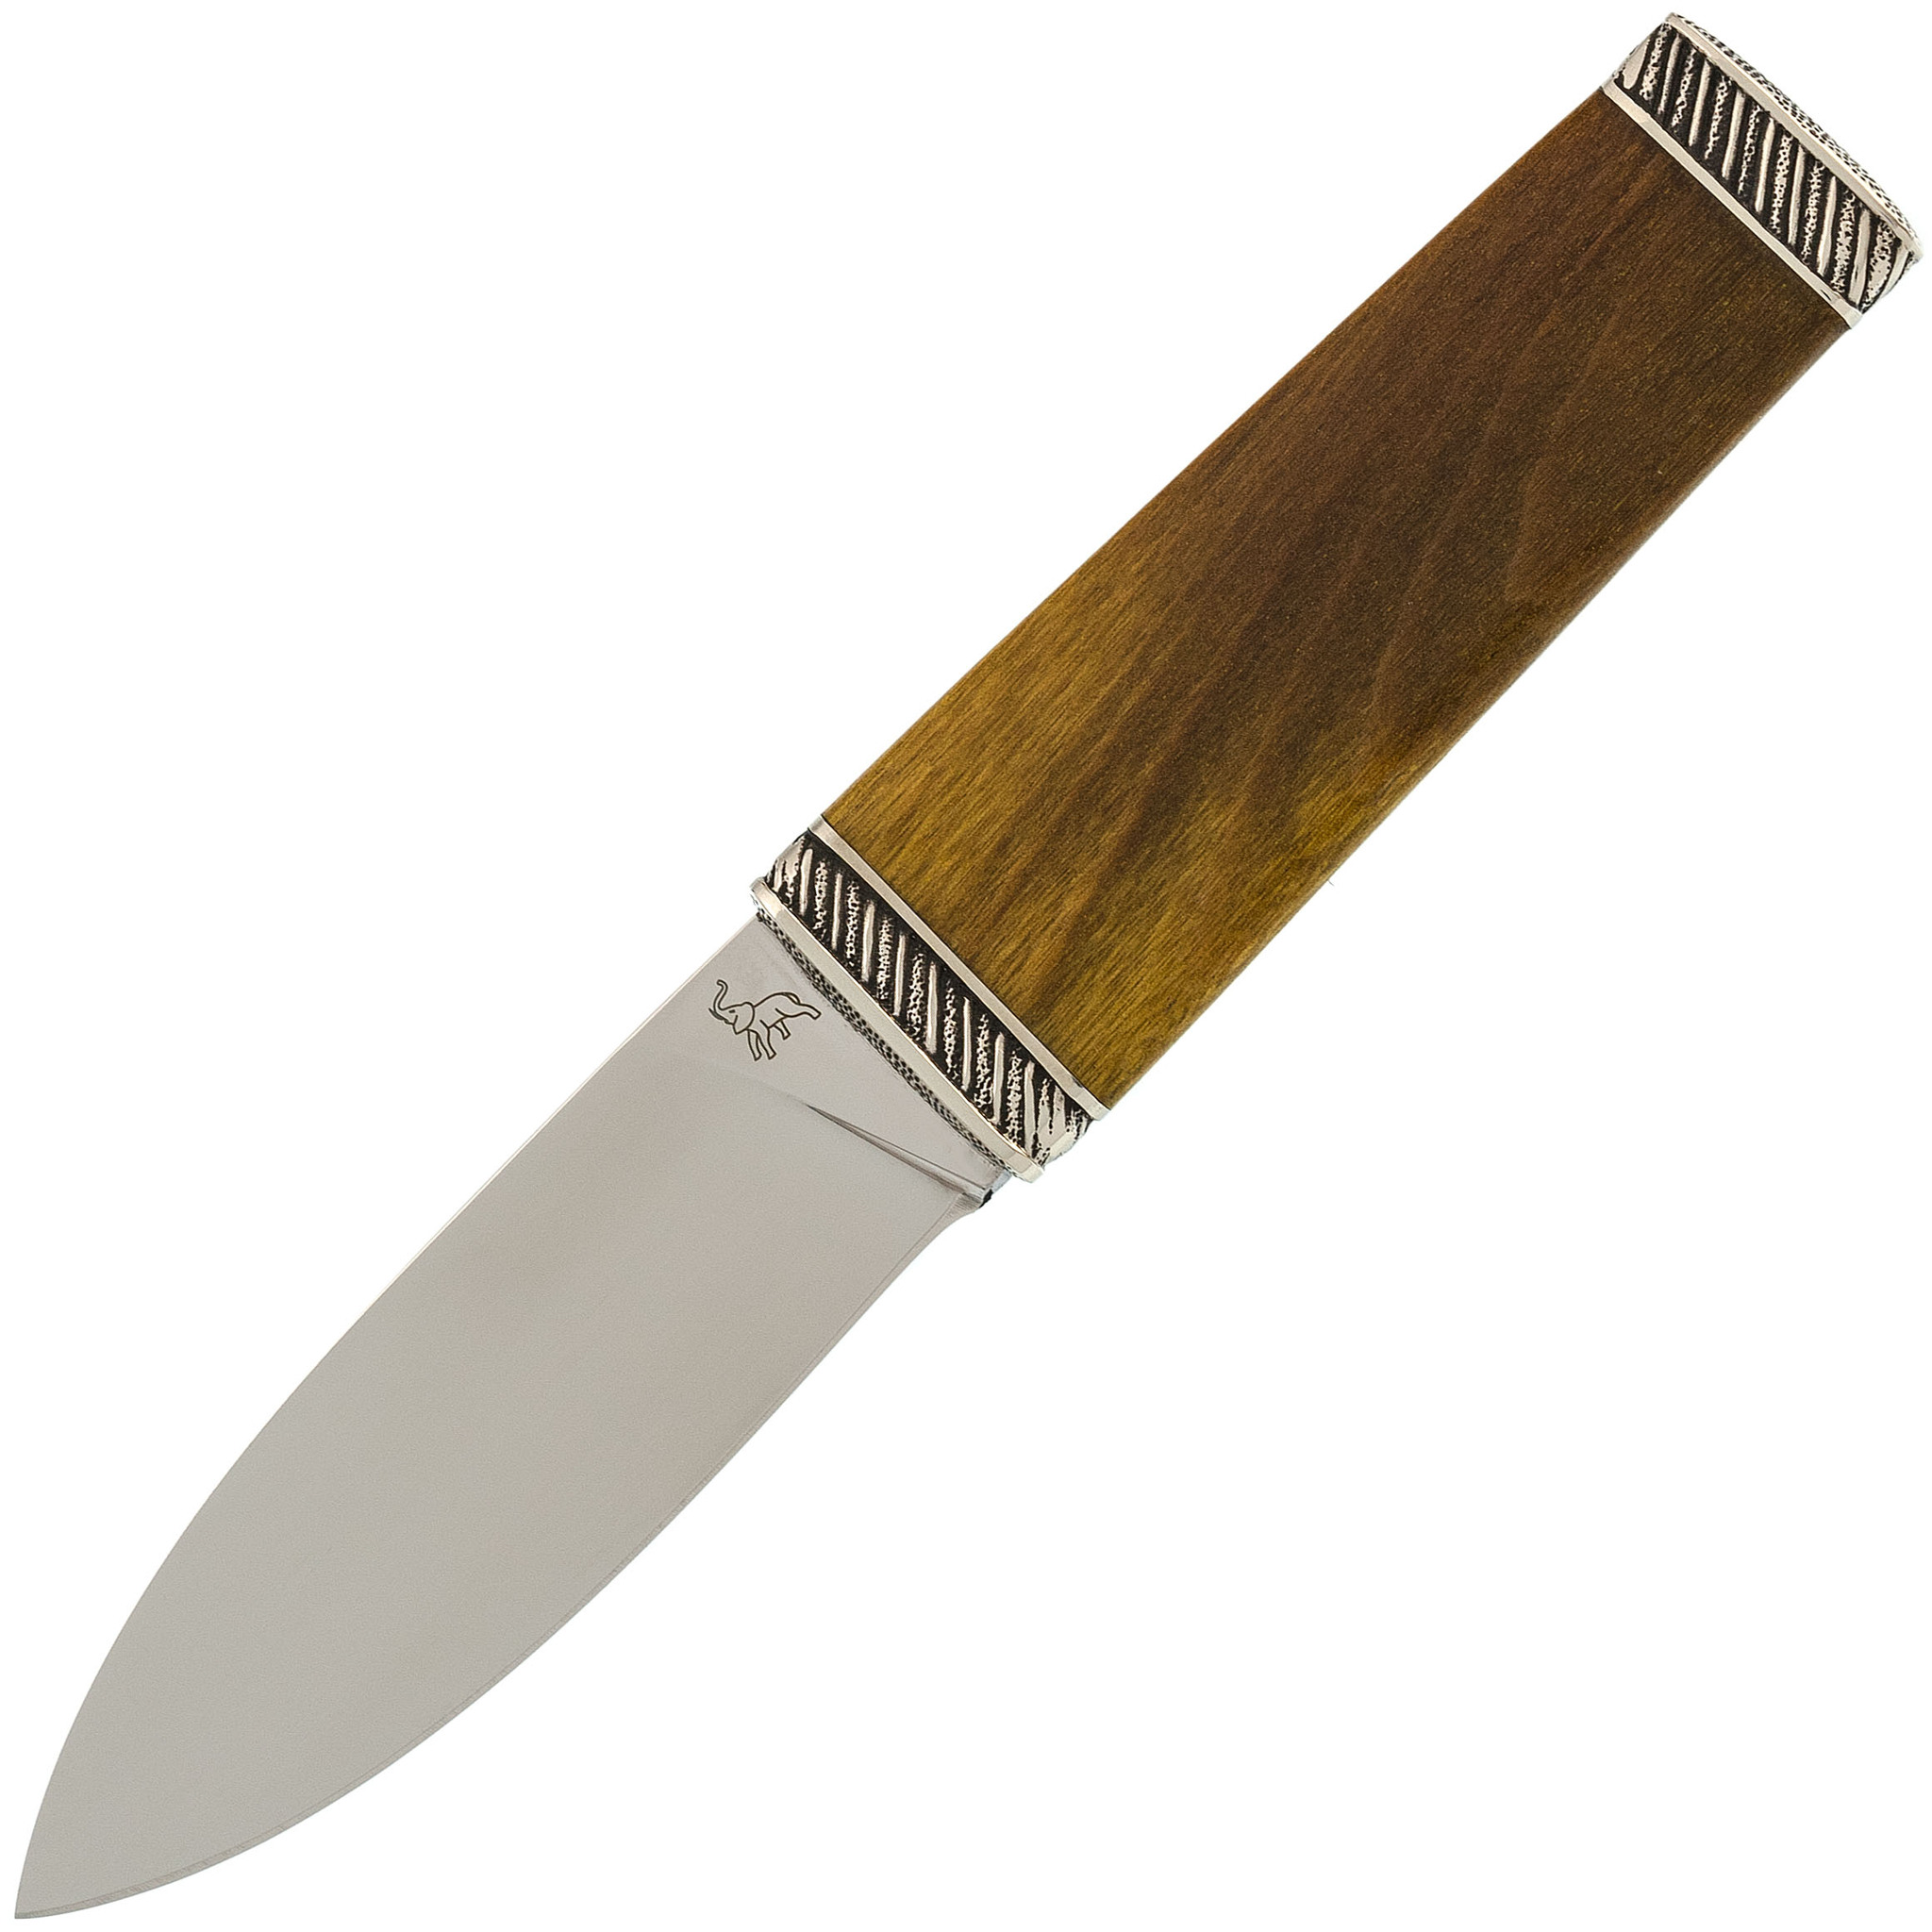 Туристический нож Скин-ду, сталь 95Х18, рукоять карельская береза